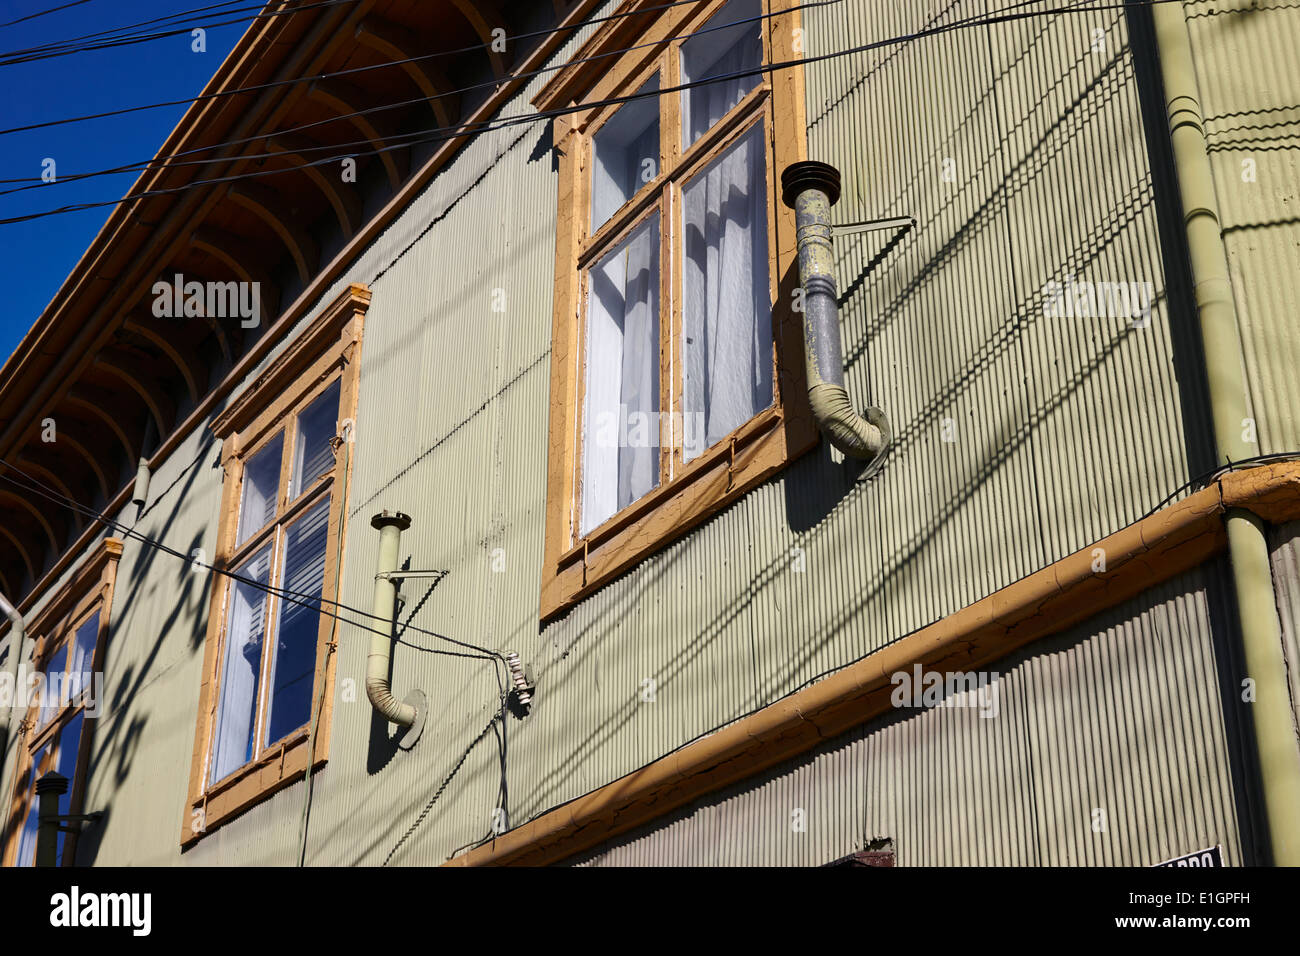 Wellblech Altbau typischen Bau Architektur Punta Arenas Chile Stockfoto